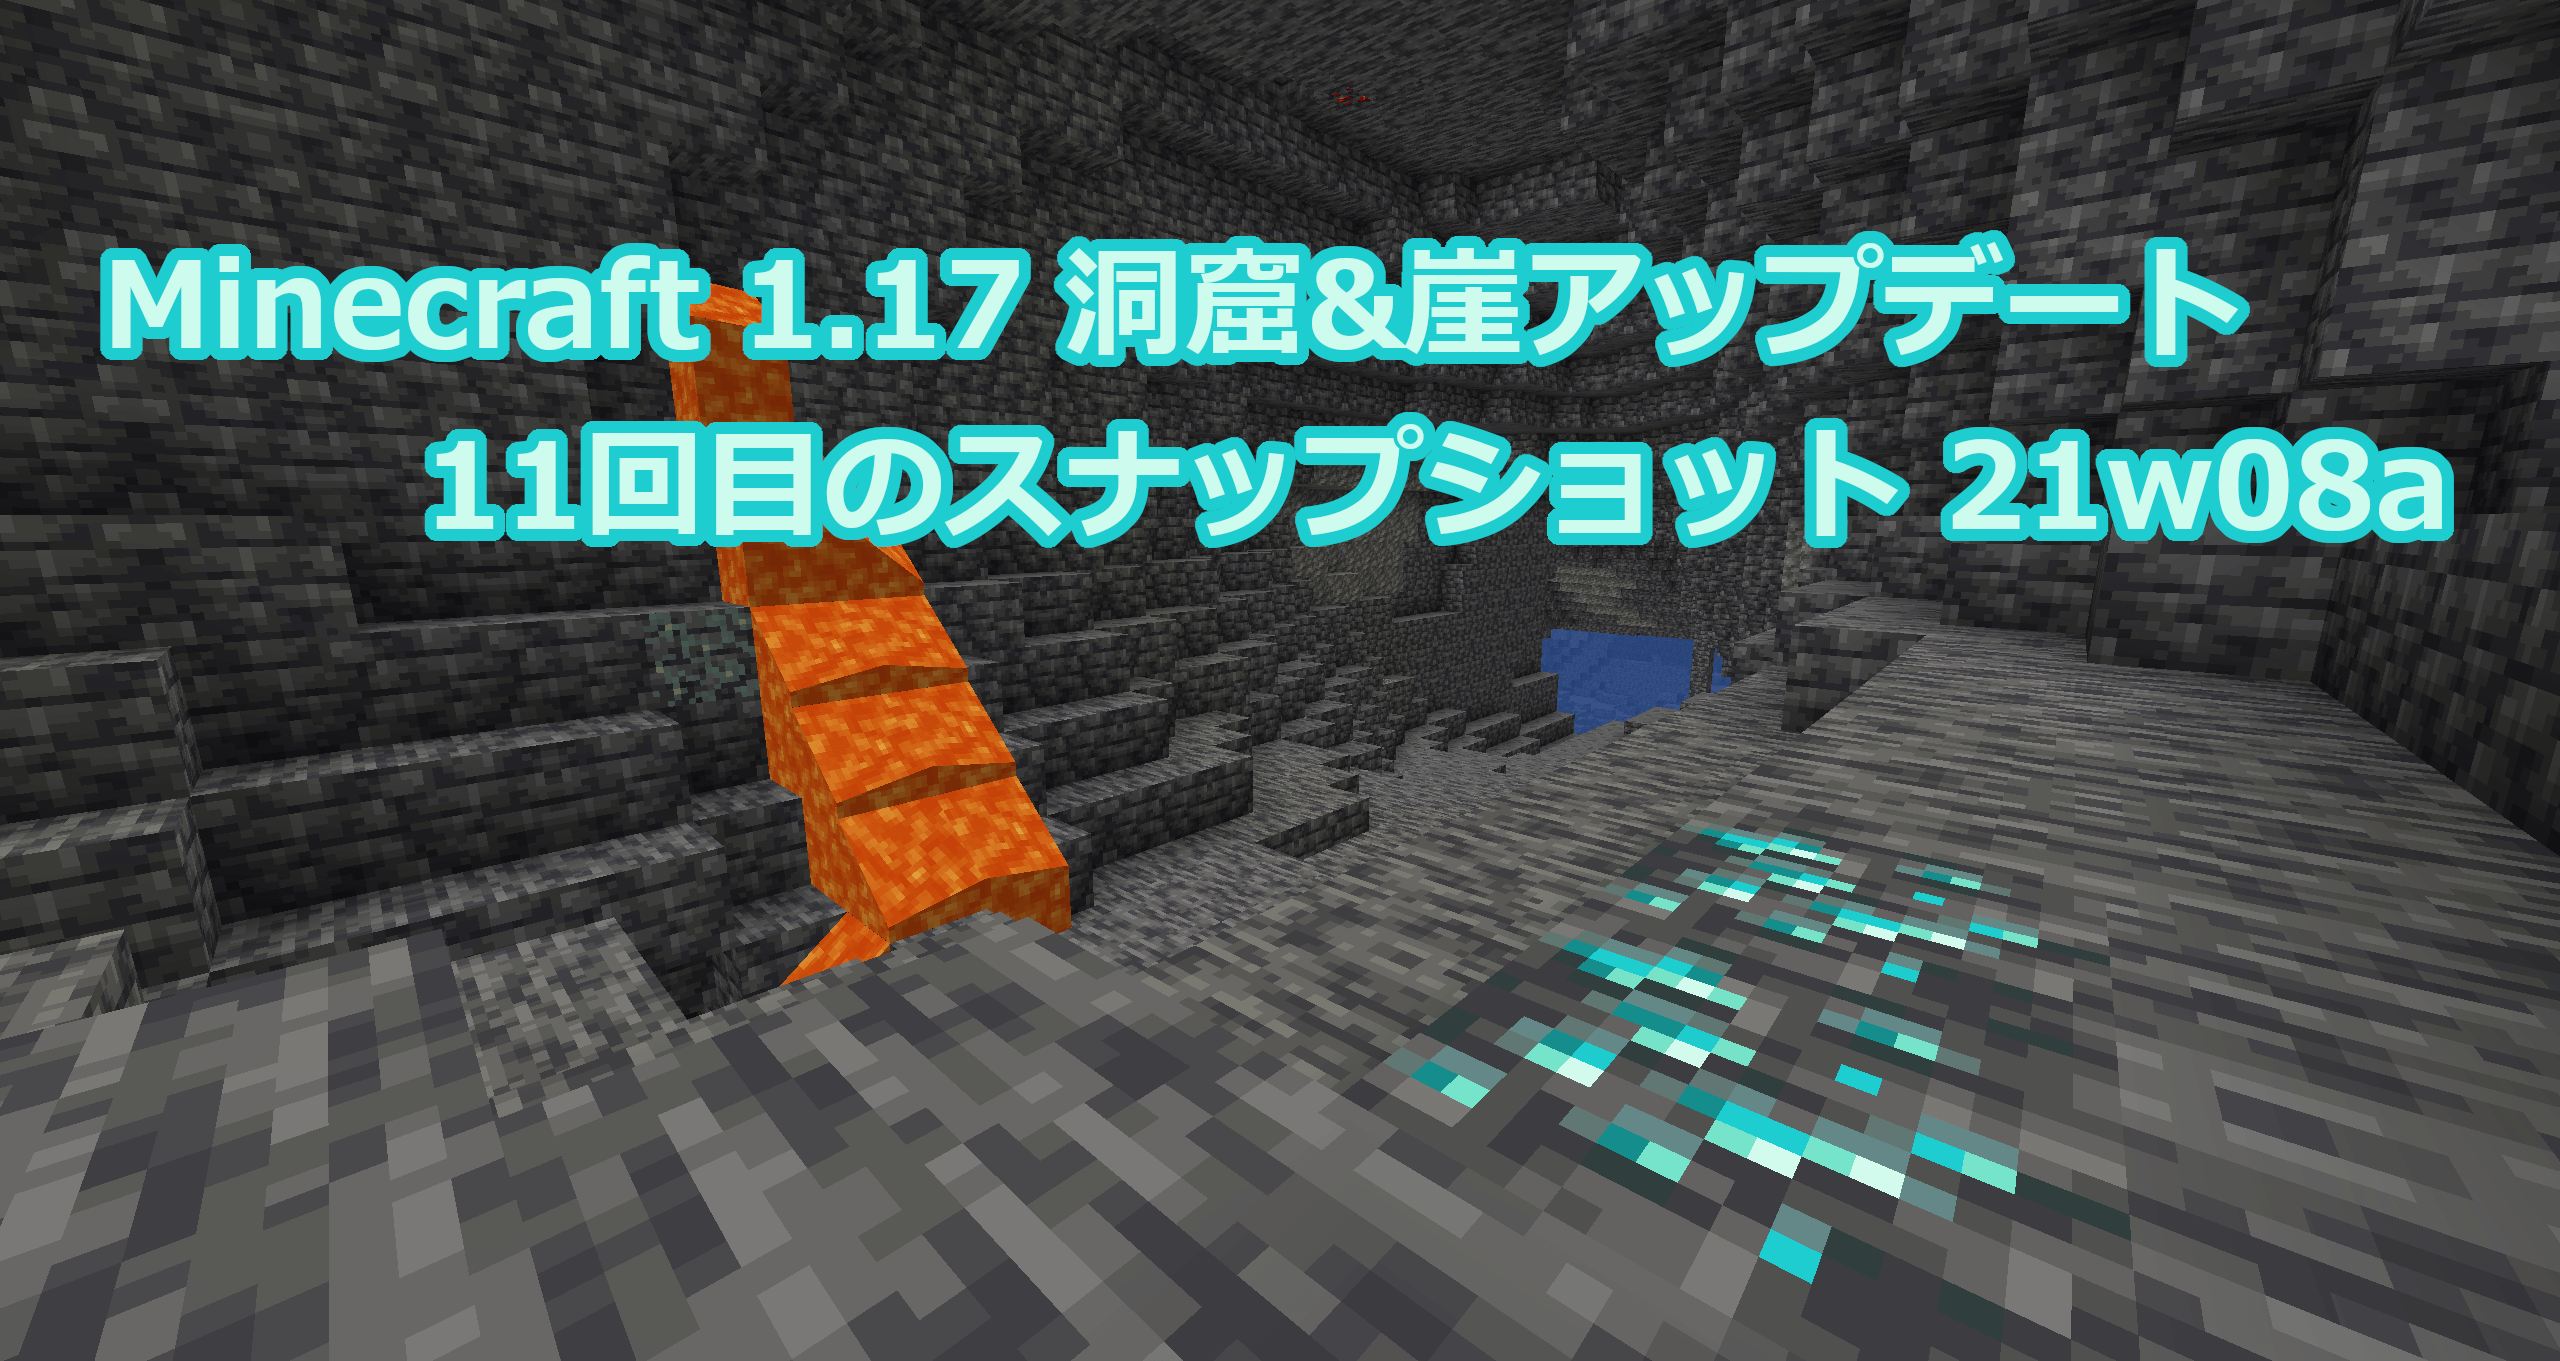 Minecraft 1 17 11回目のスナップショット21w08aリリース情報 鉱石の亜種追加と新しい洞窟生成アルゴリズム追加 まいんくらふと みっくすじゅーす